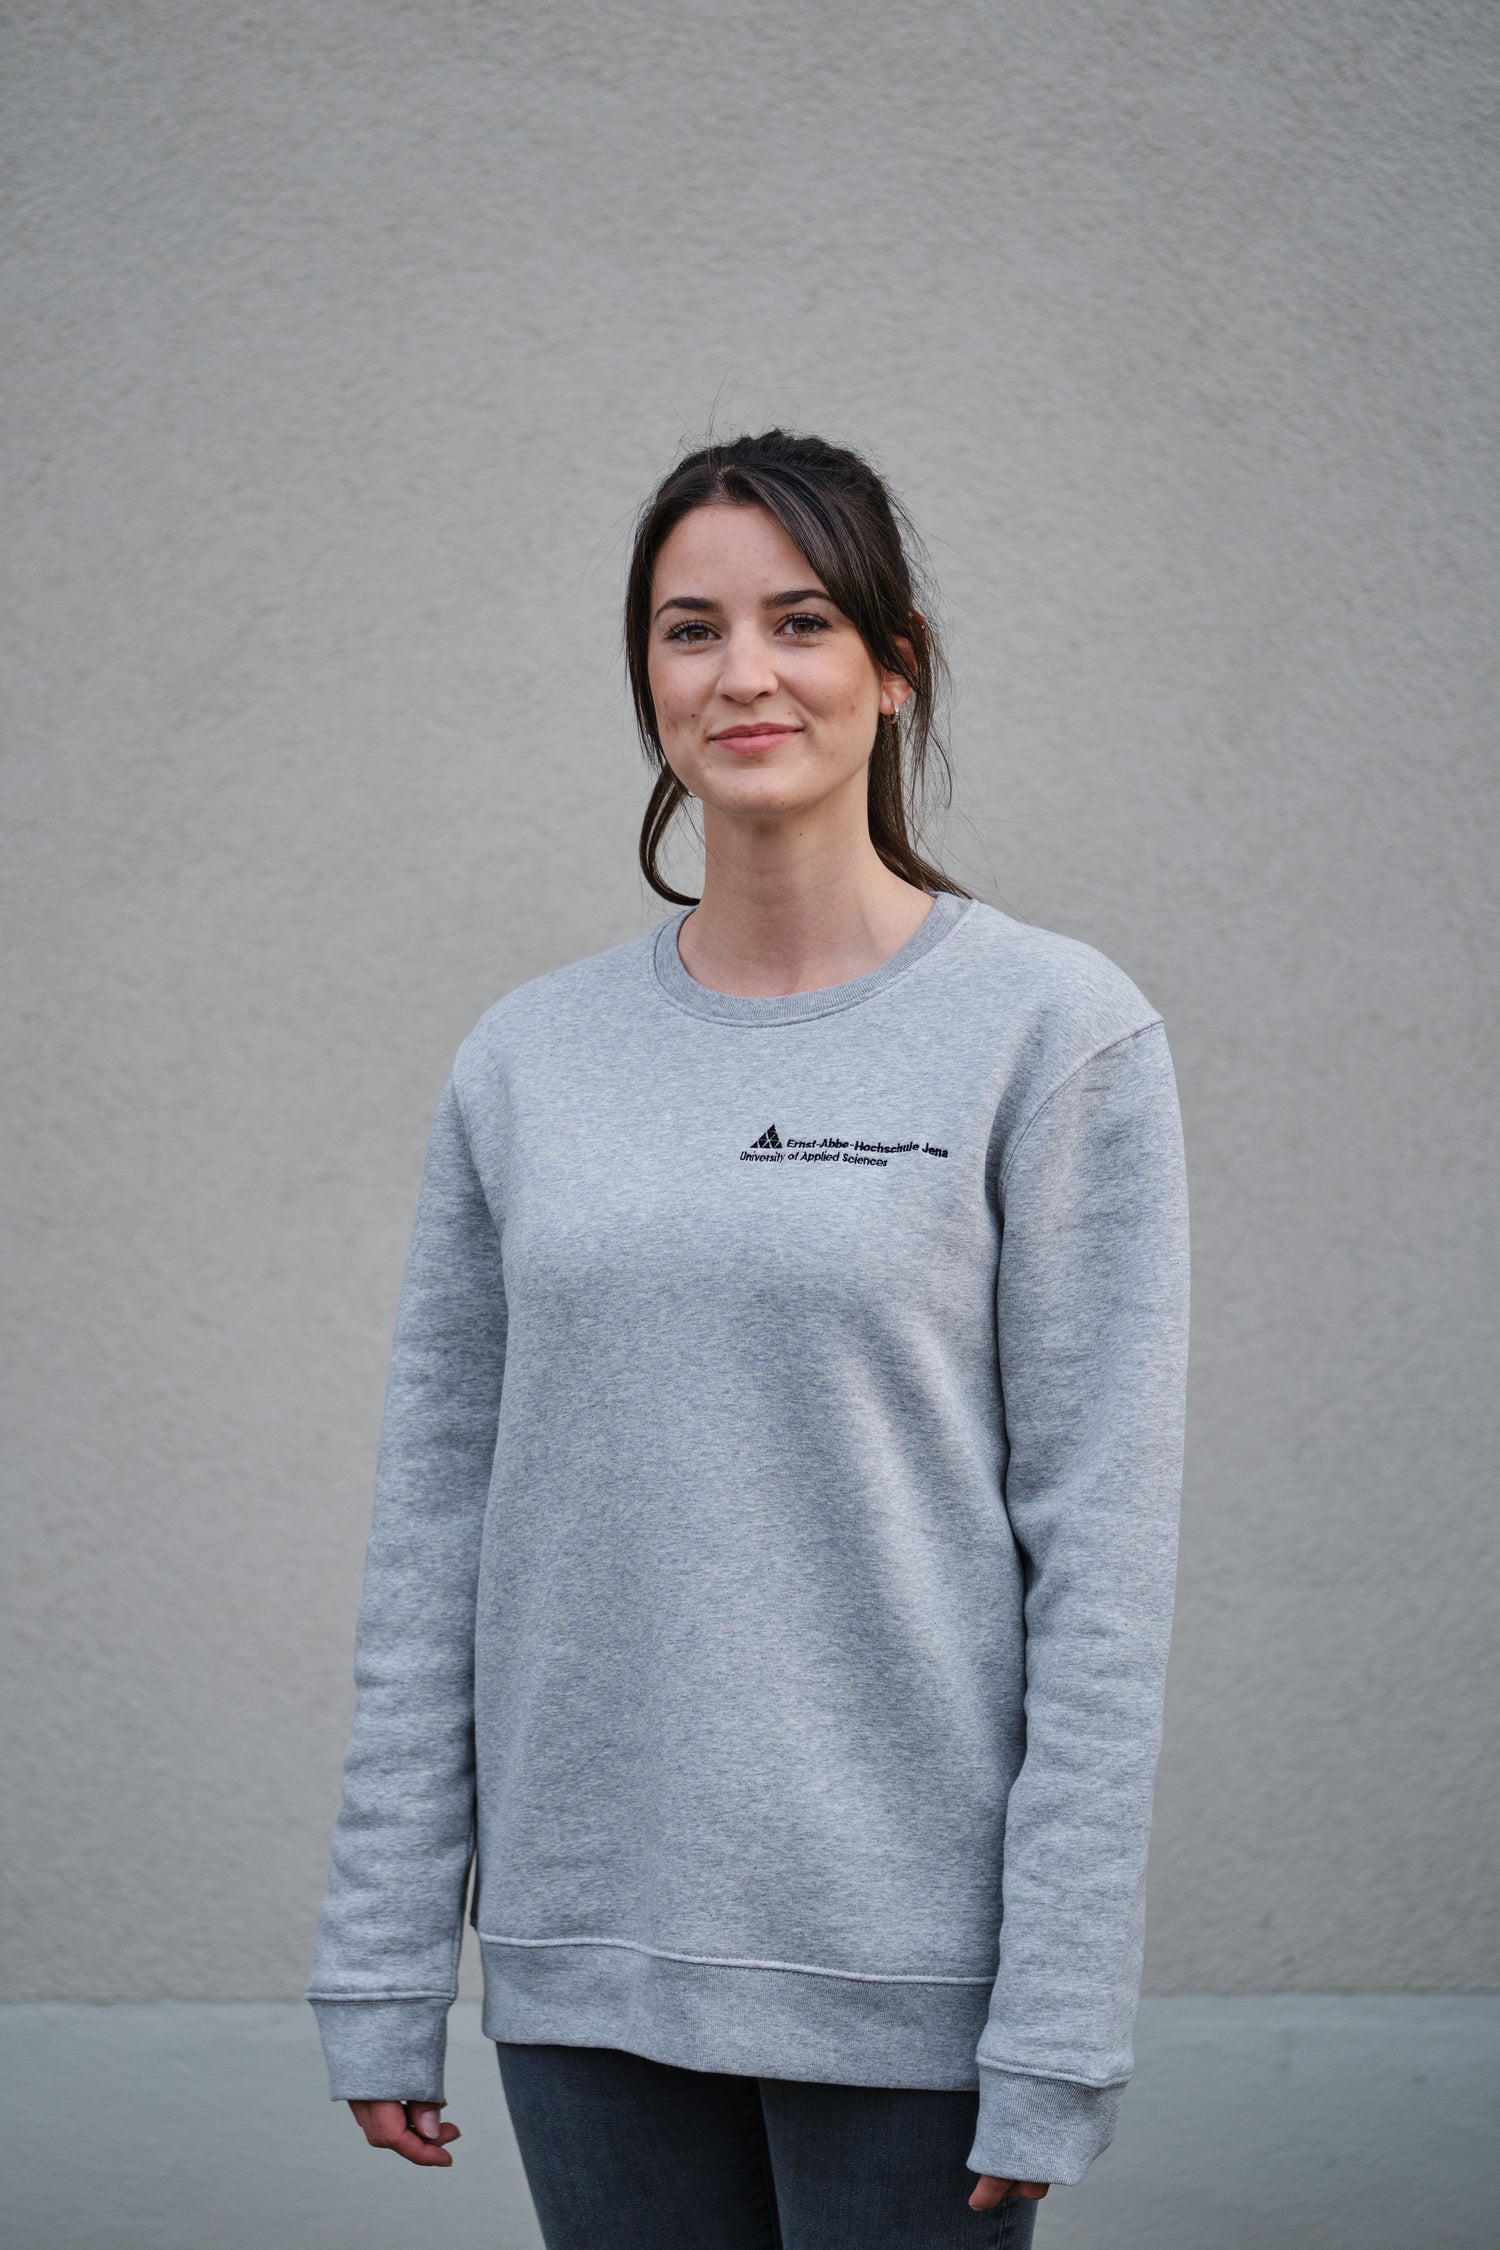 Model trägt ein graues Sweatshirt mit Logo der Ernst-Abbe-Hochschule